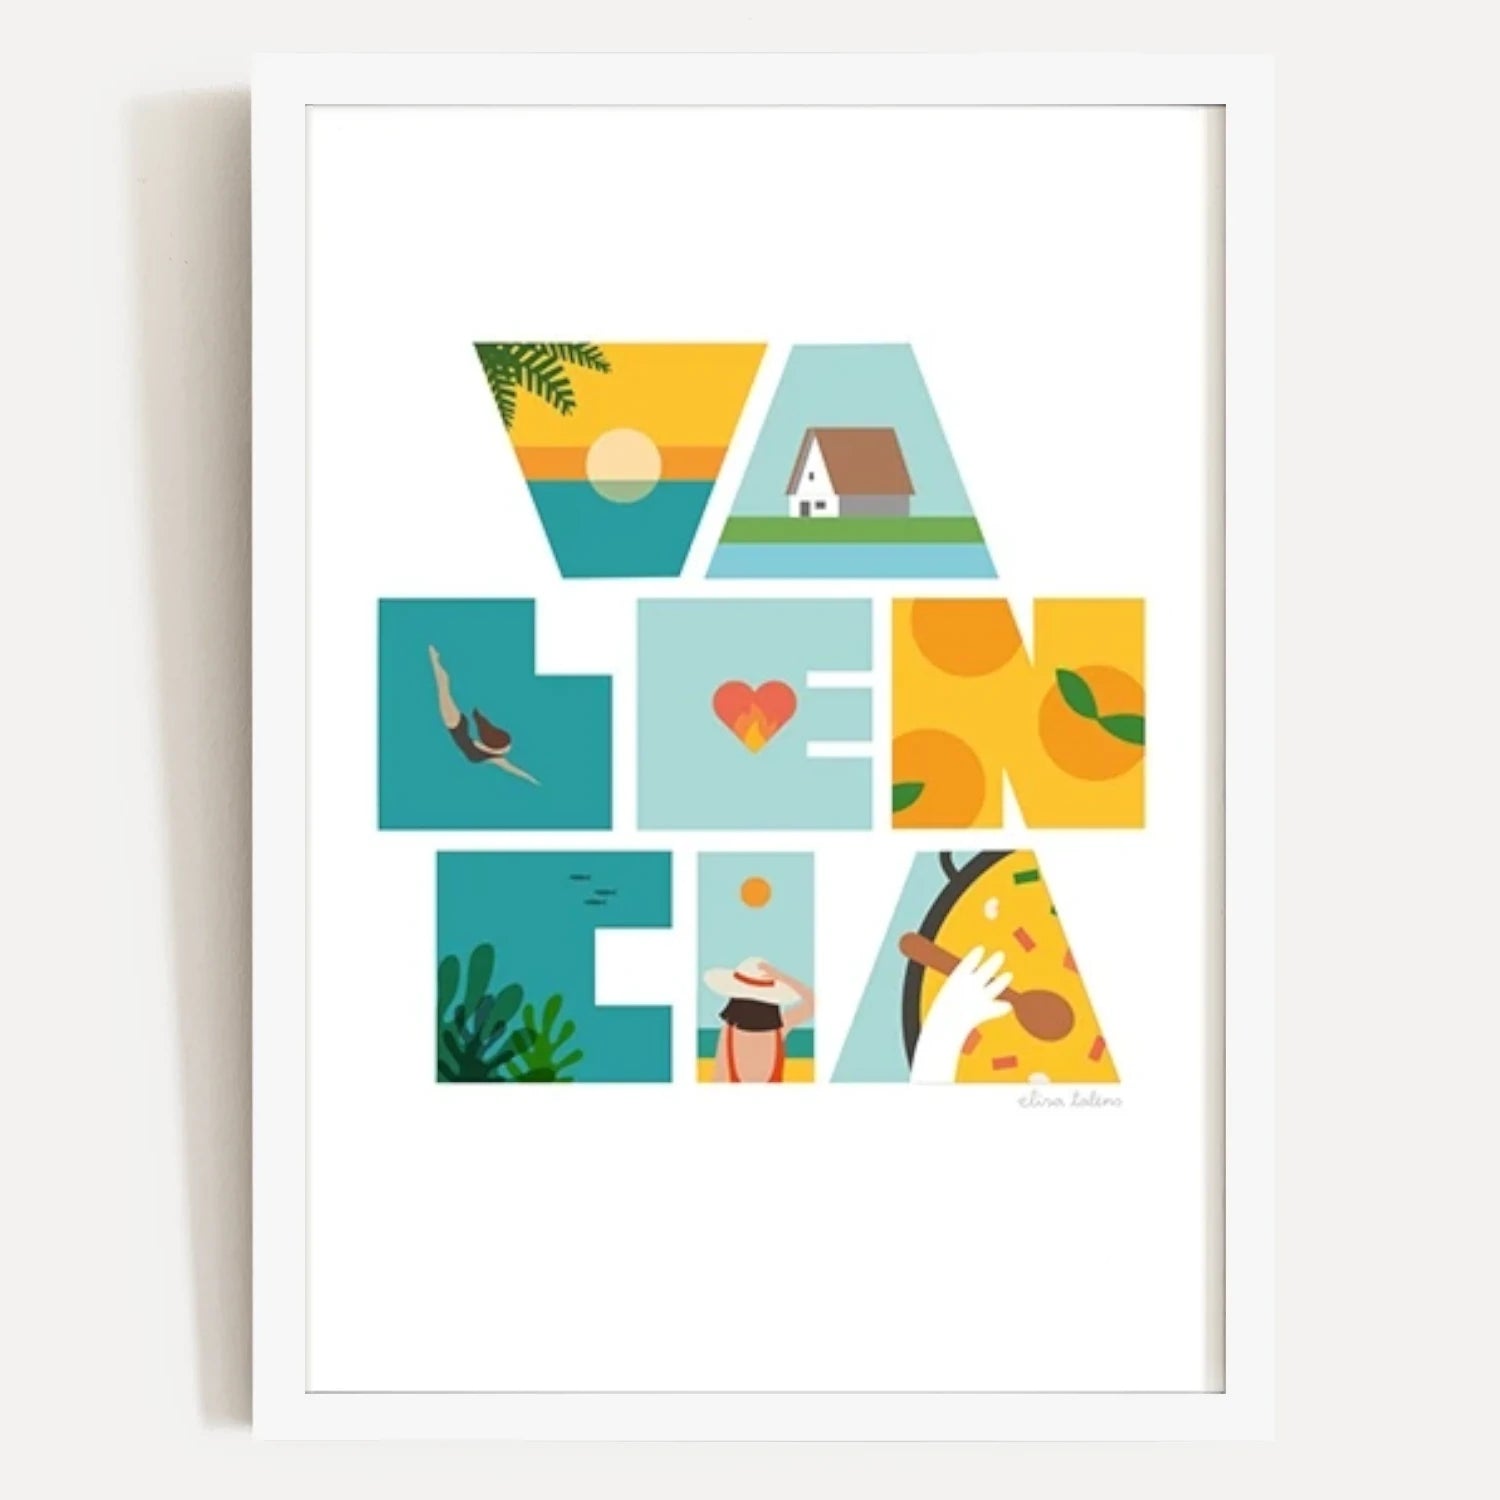 Ilustración con las letras de valencia llenas de elementos típicos como naranjas, playa, paella o barracas. Enmarcada en cuadro blanco